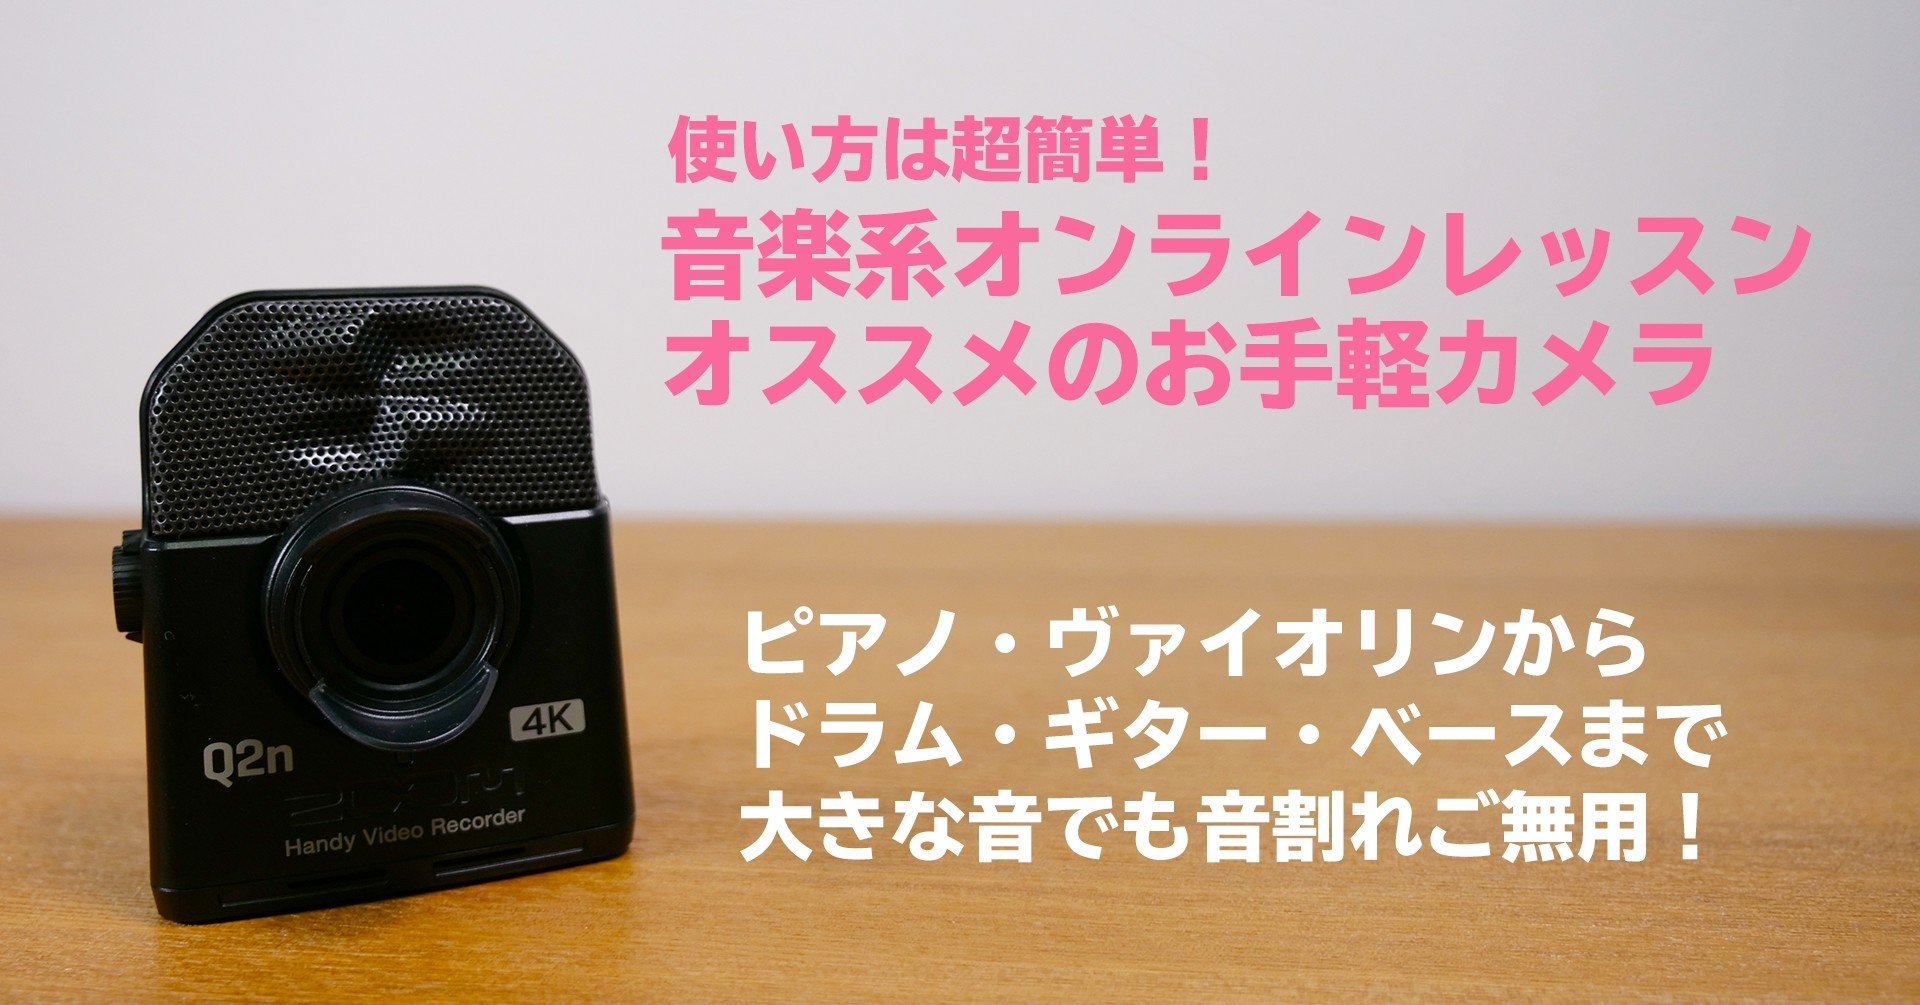 Q2n-4Kは音楽系オンラインレッスンにオススメの超お手軽カメラ